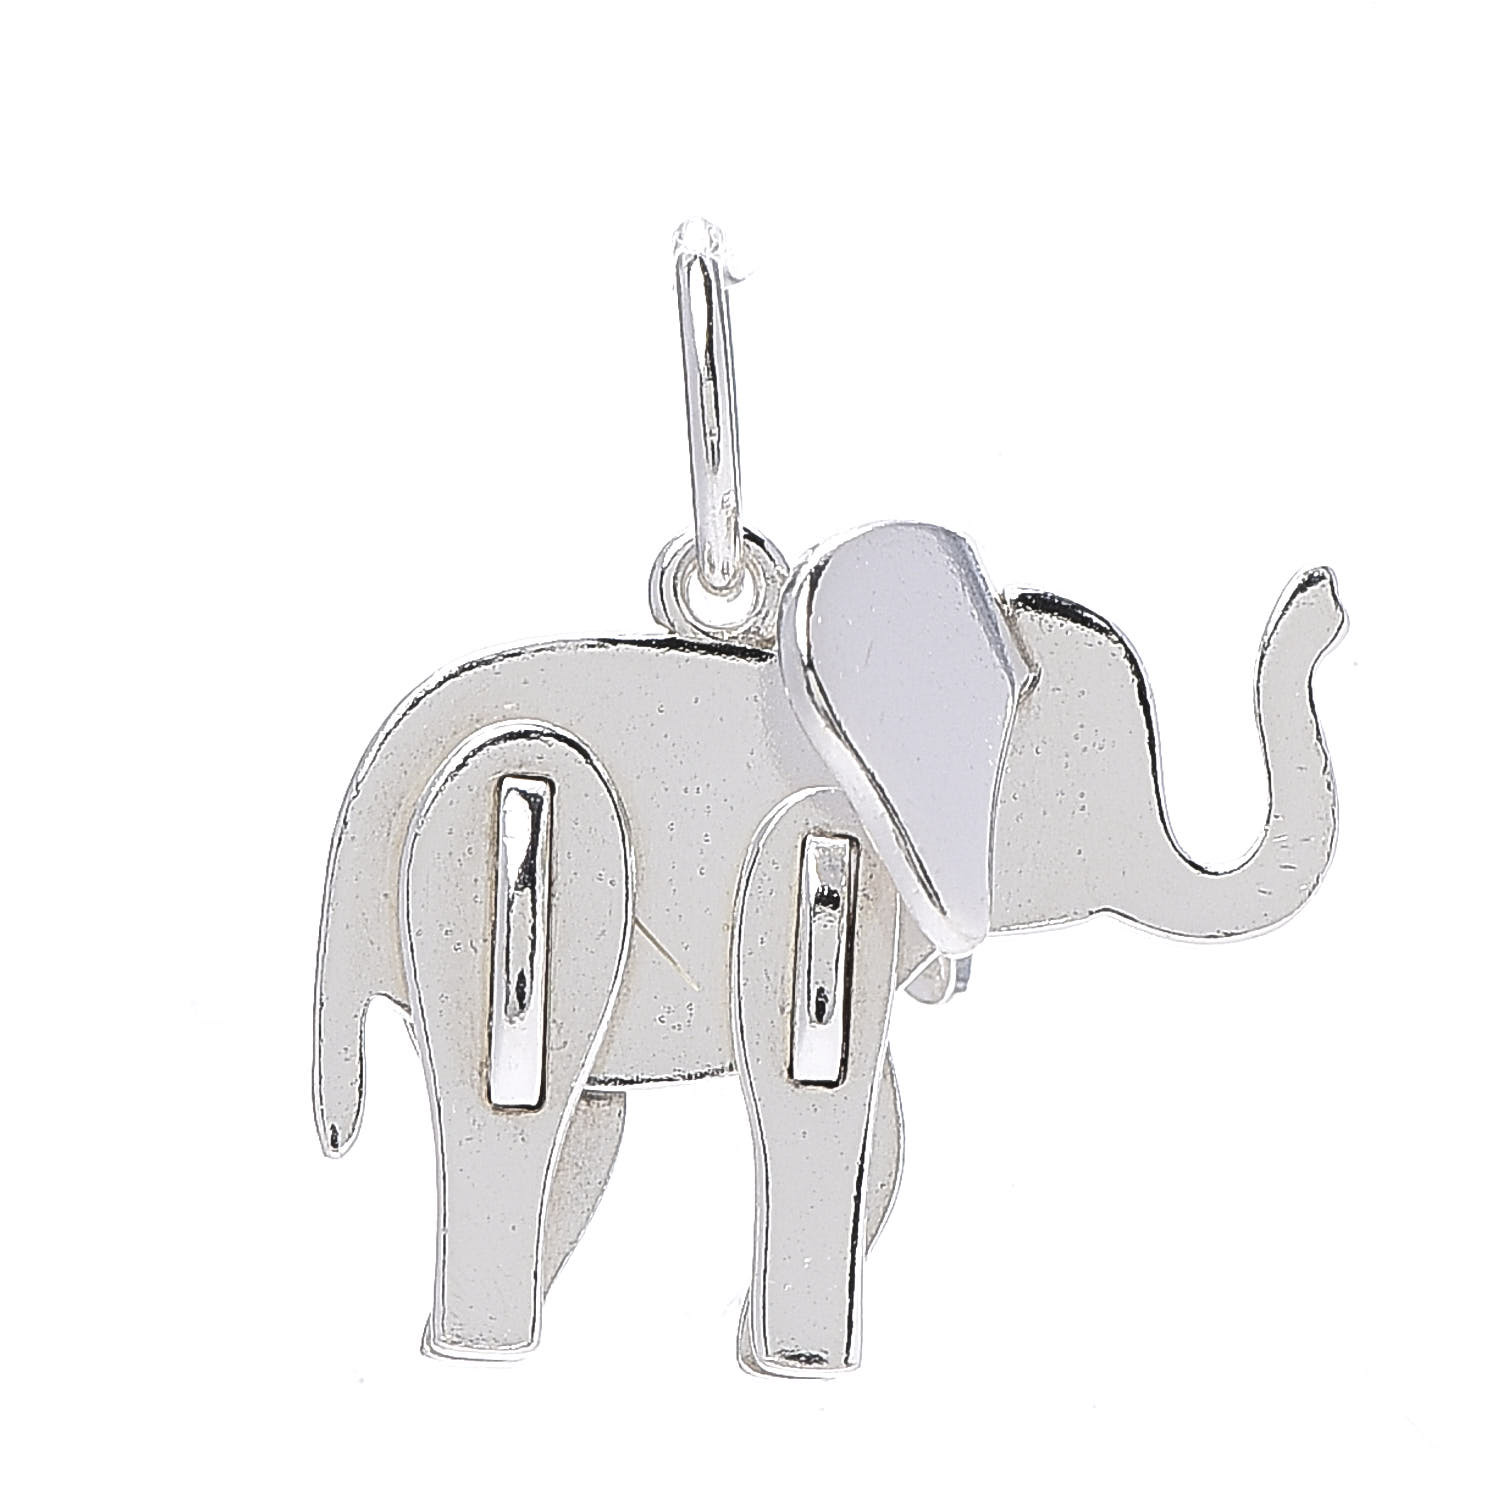 tiffany elephant charm